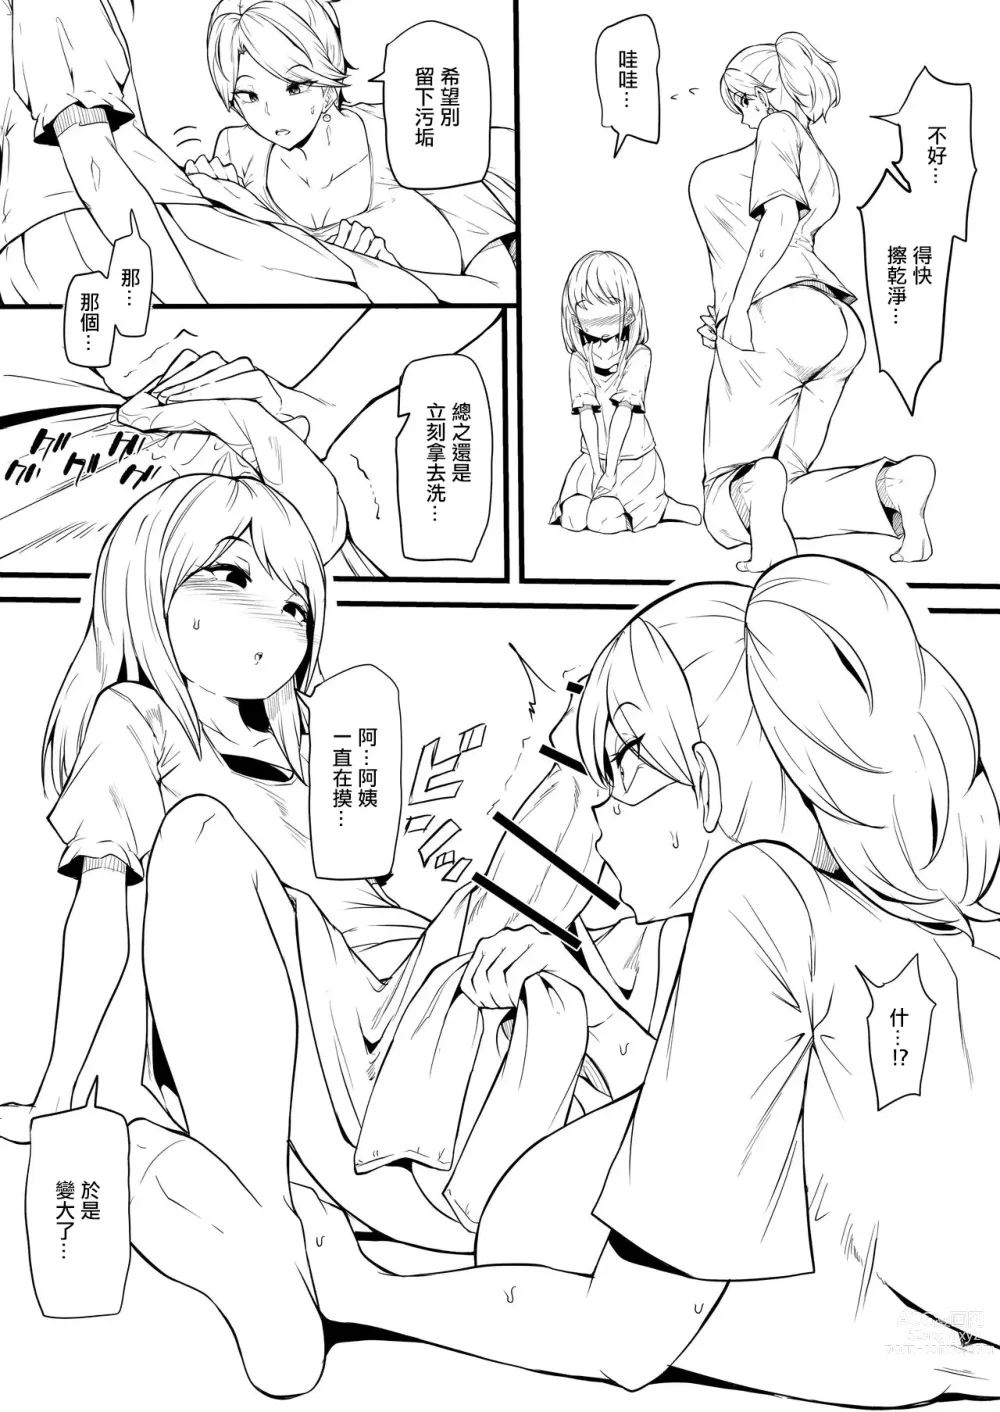 Page 3 of doujinshi Musume no Tomodachi ni Otosareru Manga Matome